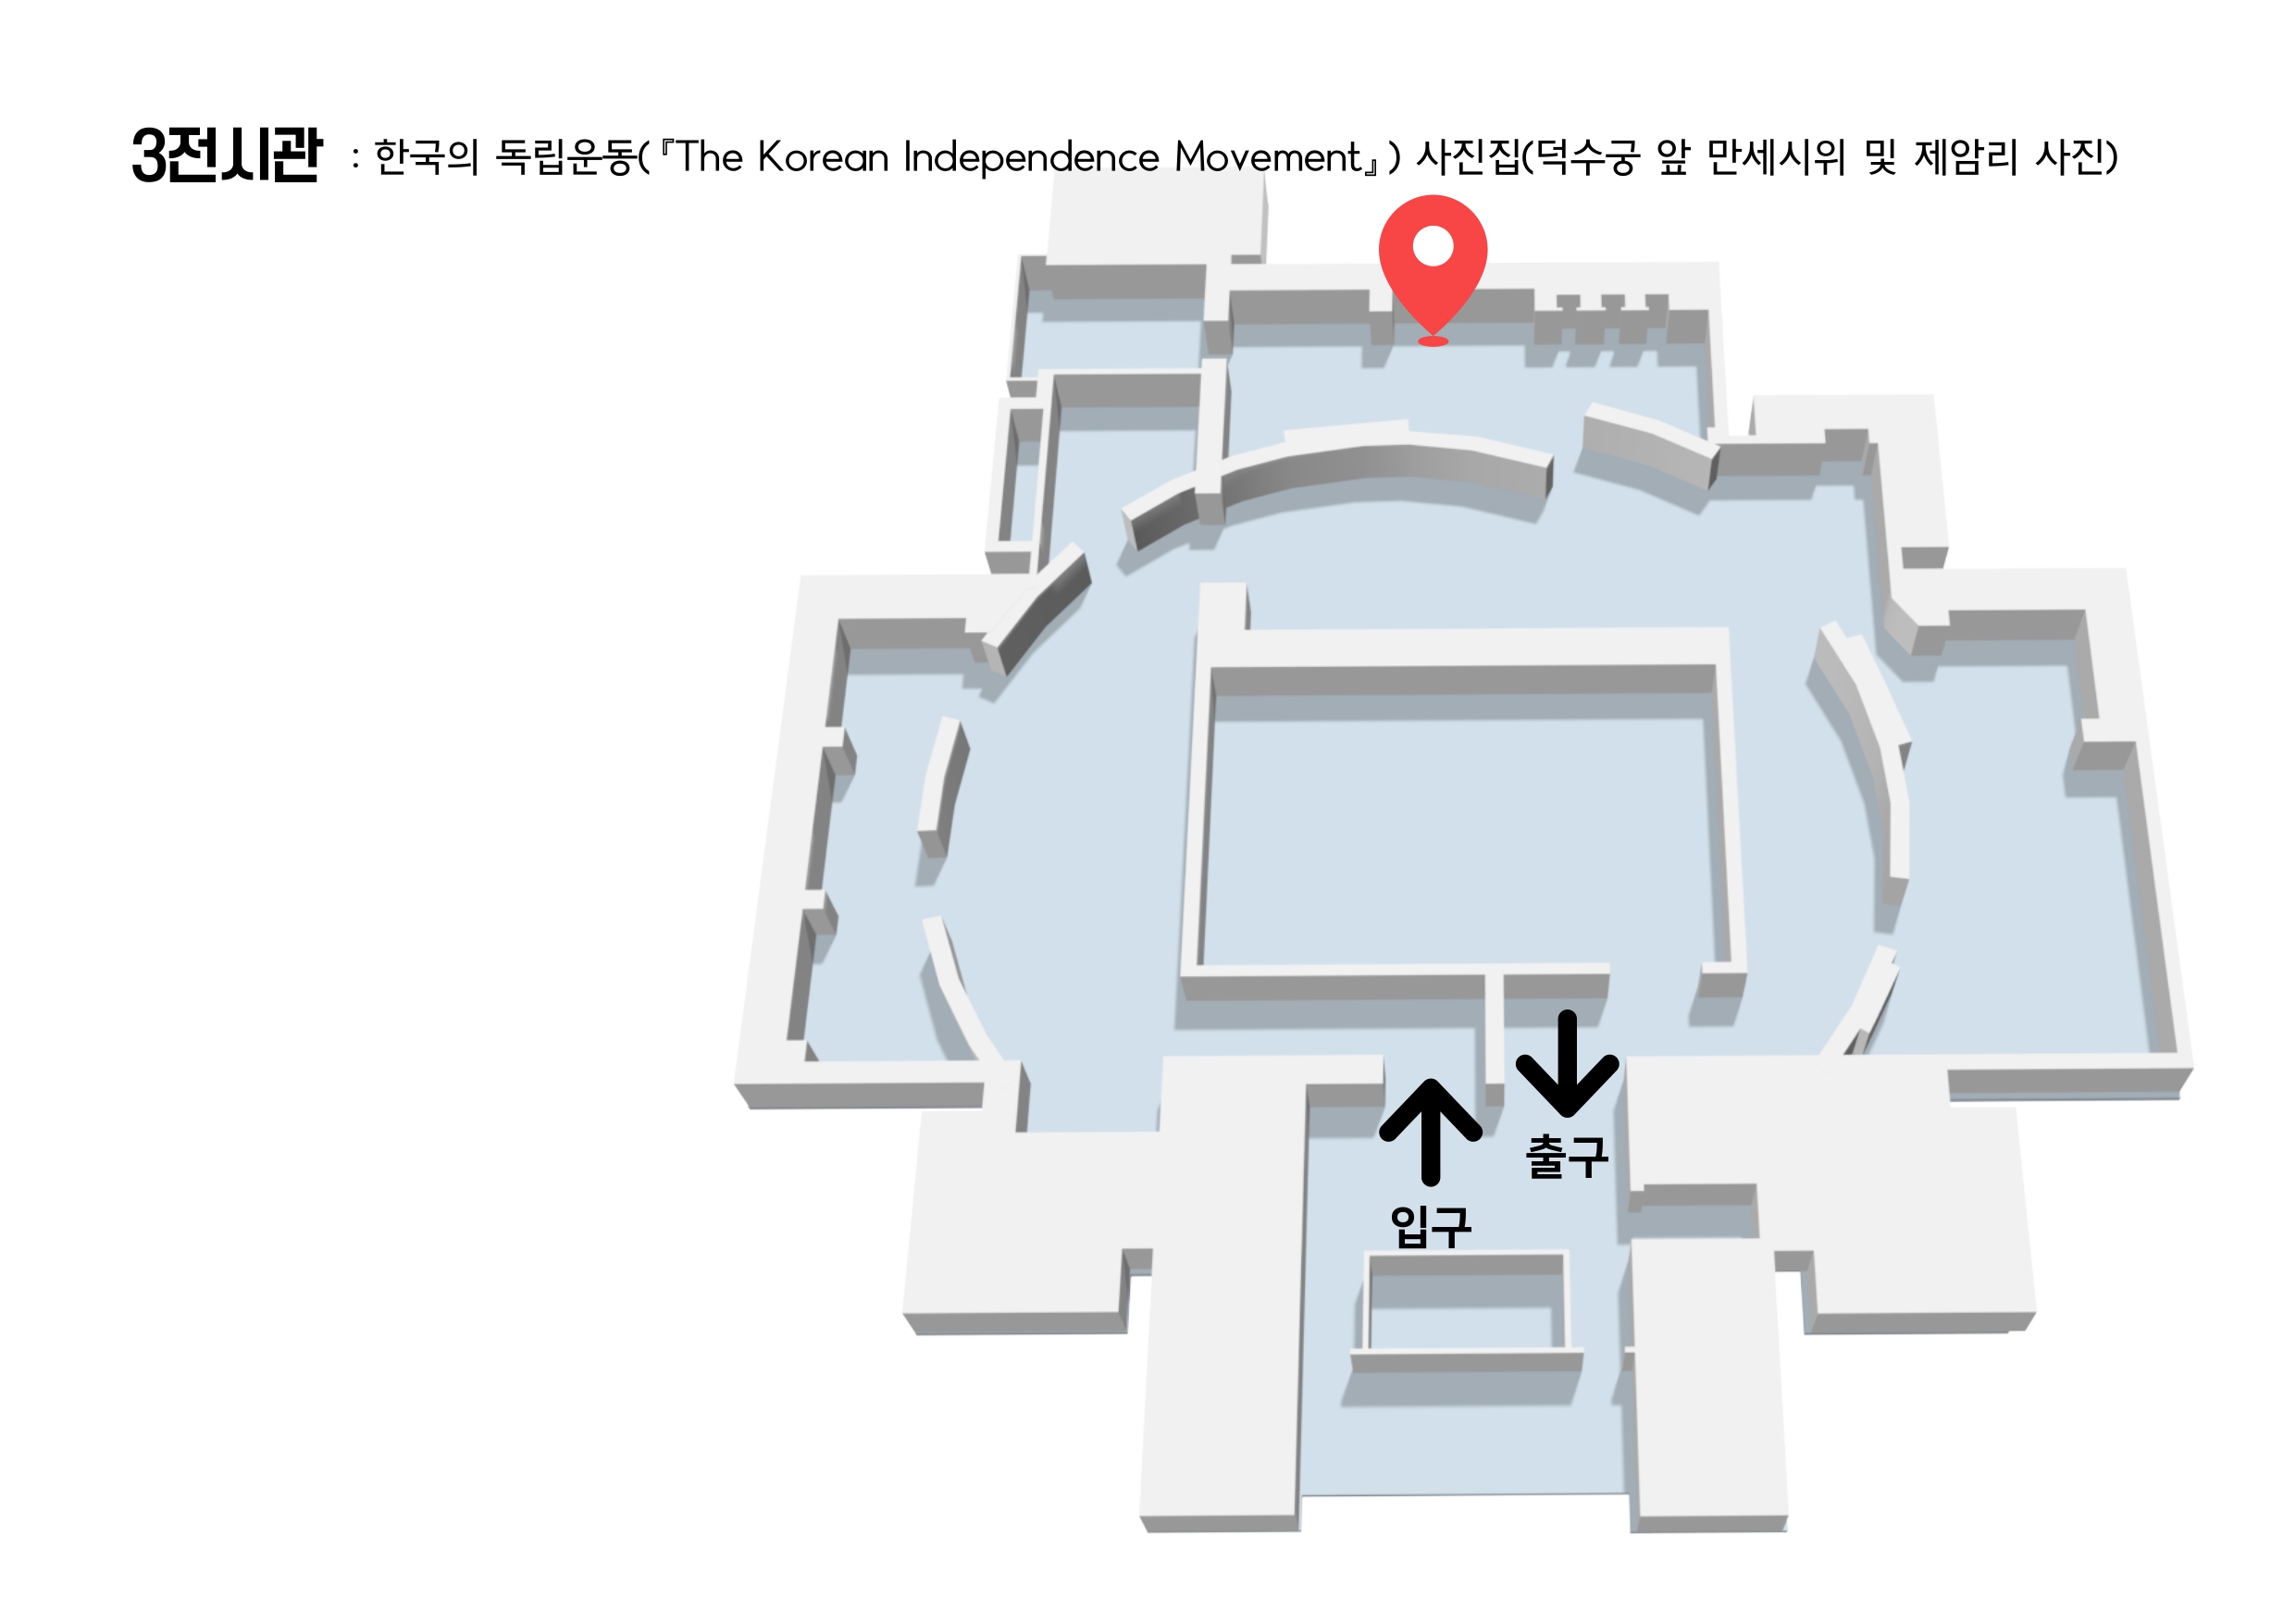 3전시관 한국의 독립운동(『The Korean Independence Movement』) 사진집 전시물 위치